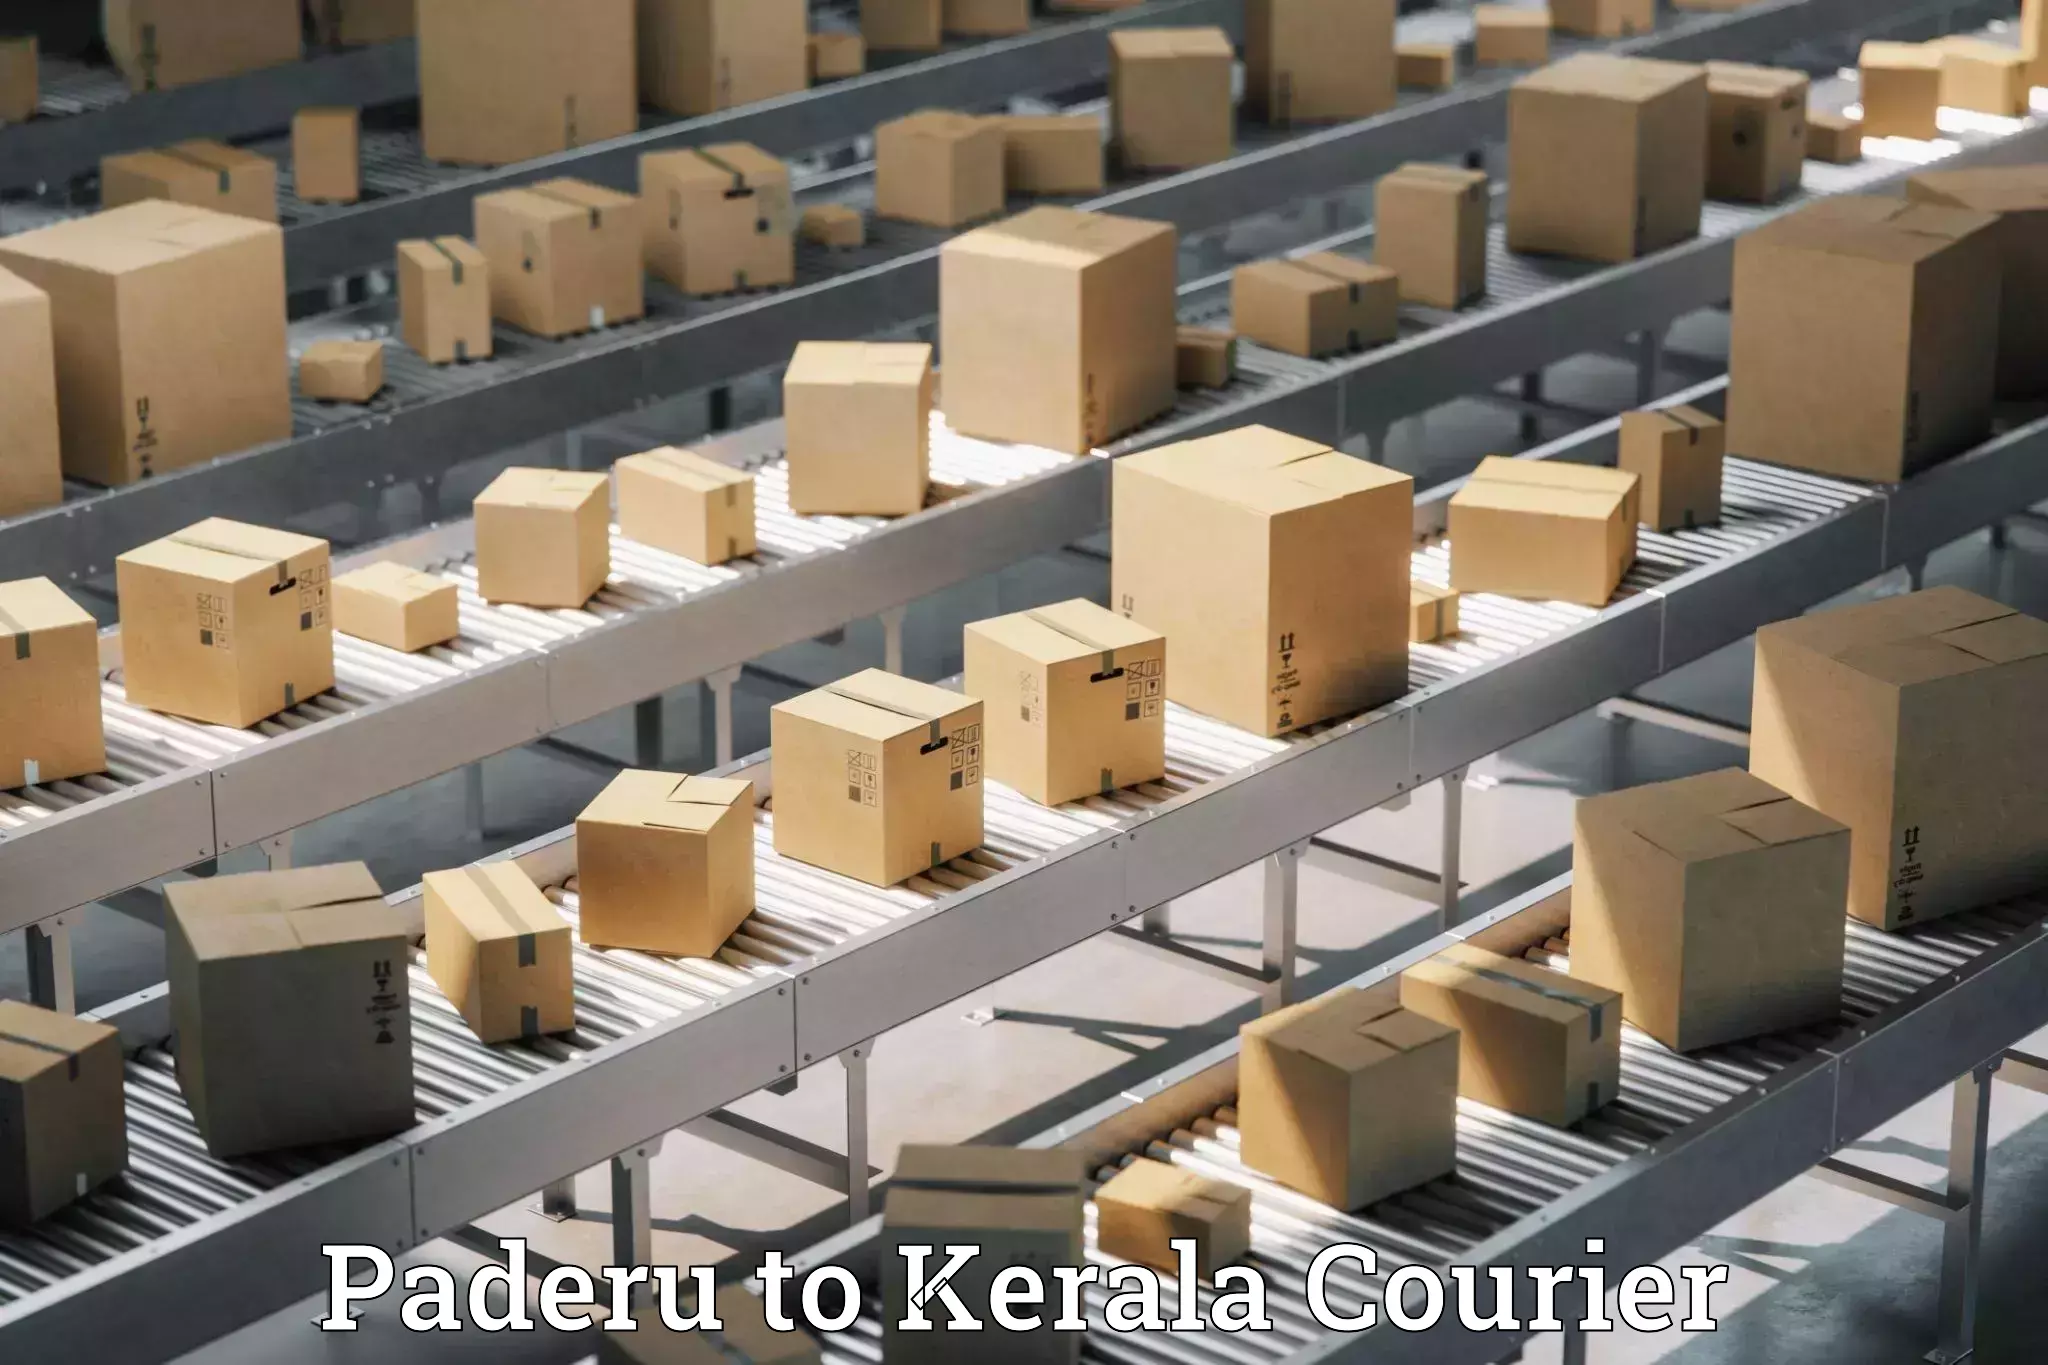 High-capacity shipping options Paderu to Chungathara